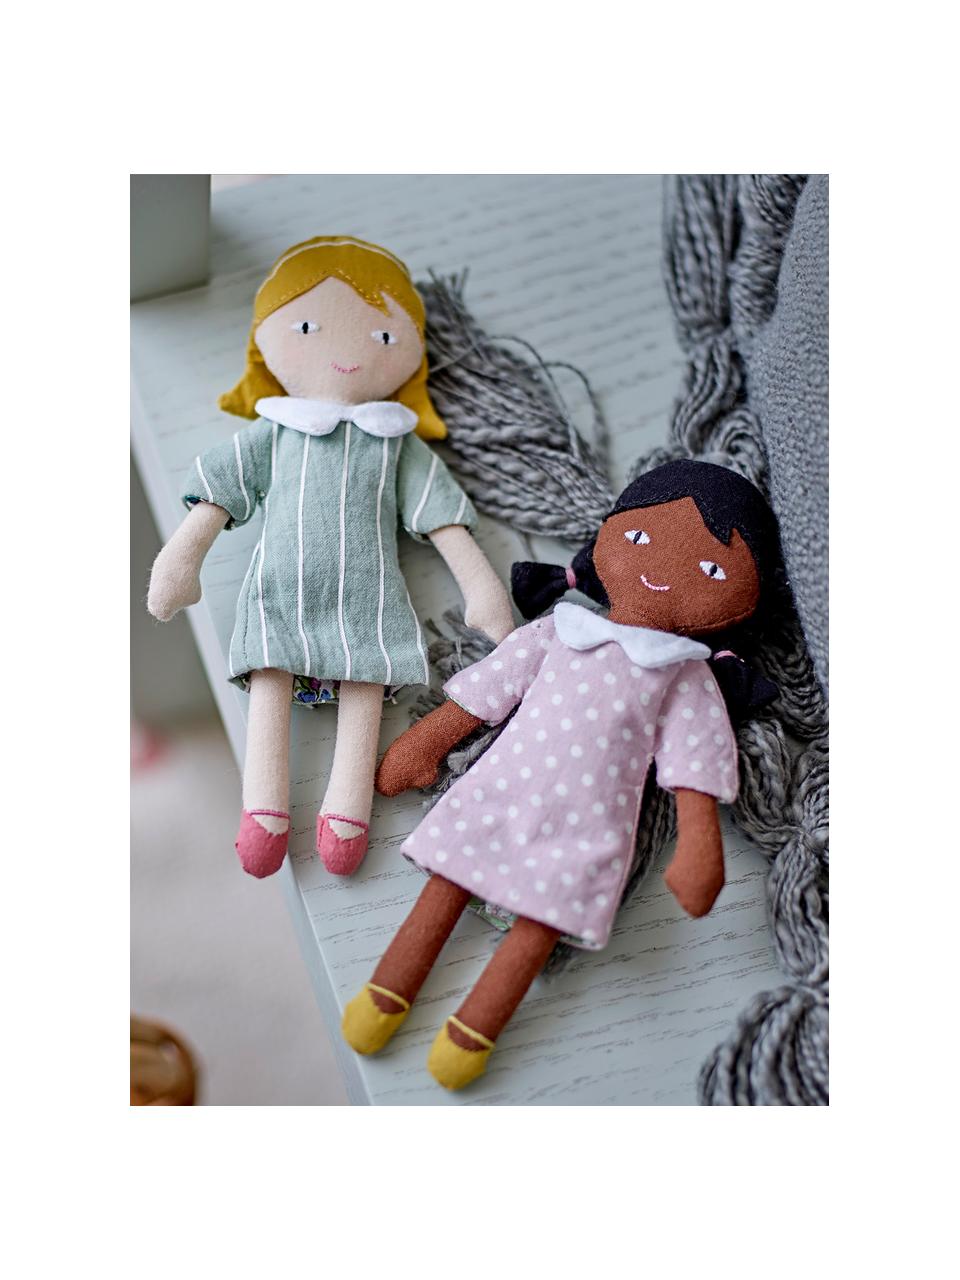 Muñecas de tela Hella & Stella, 2 uds., Funda: 100% algodón, Multicolor, An 6 x Al 16 cm